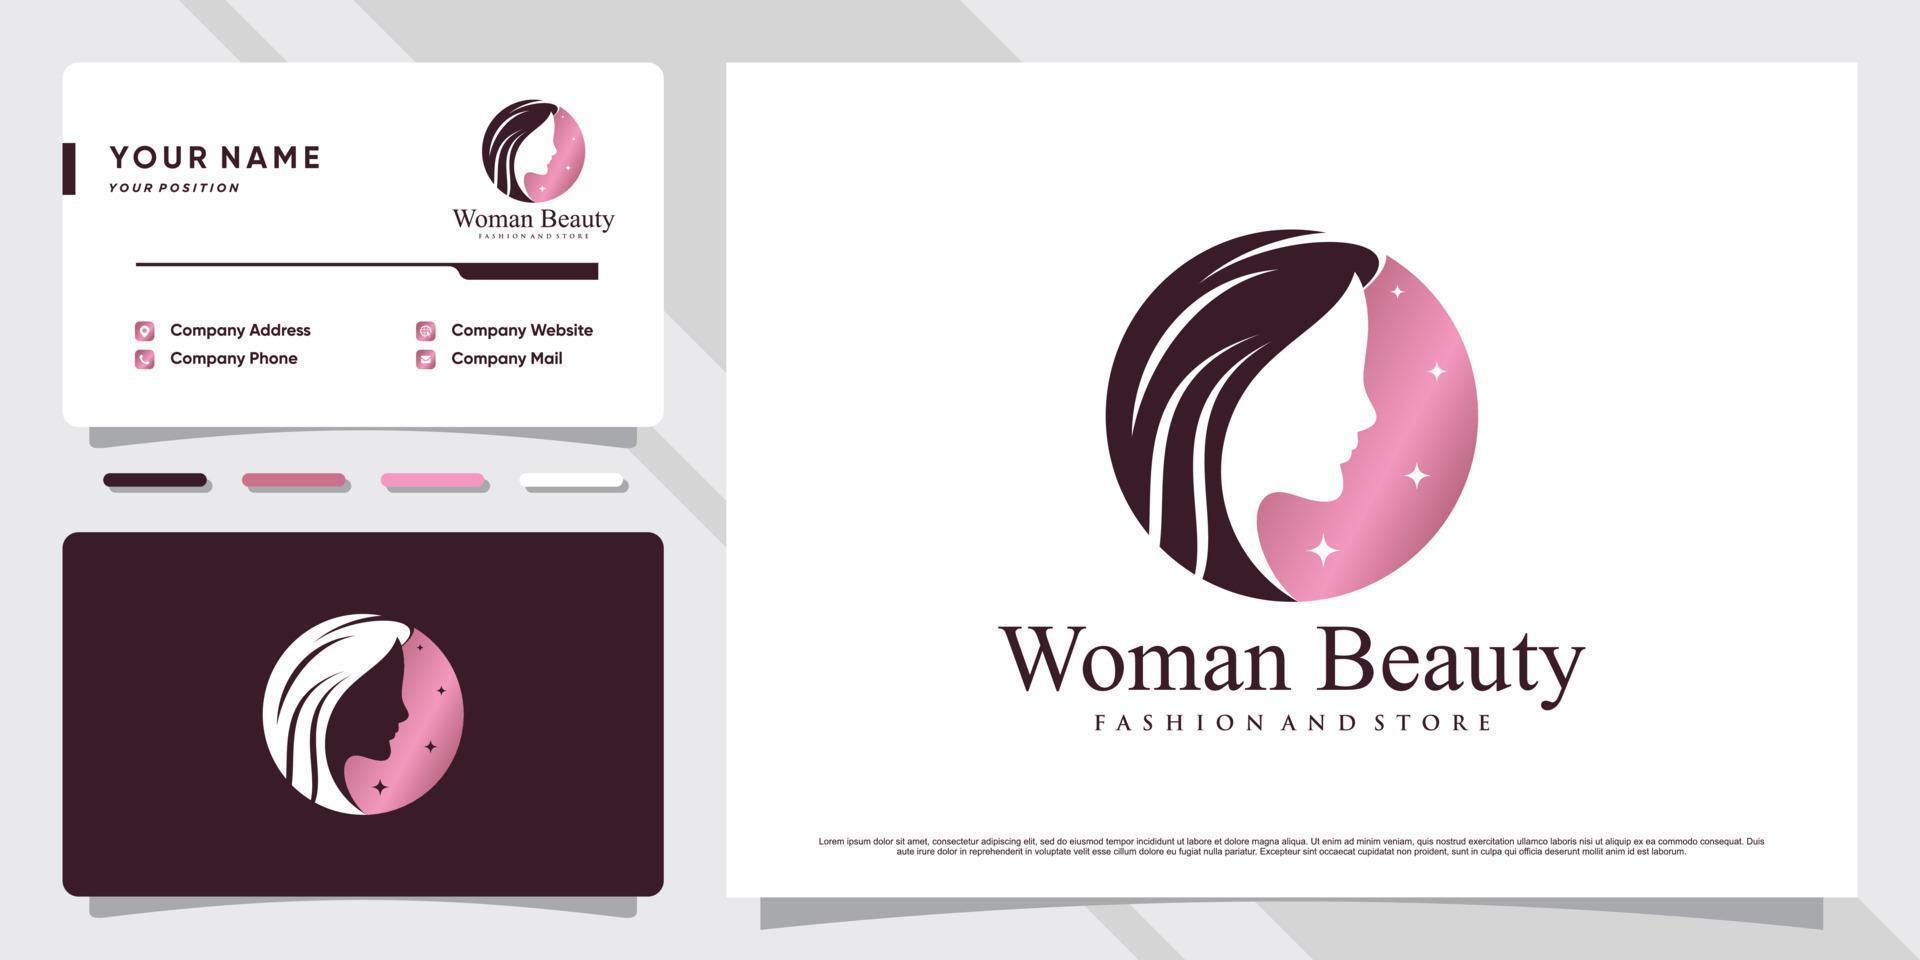 Beauty-Frauen stehen Logo-Inspiration mit kreativem Konzept und Visitenkarten-Design Premium-Vektor gegenüber vektor